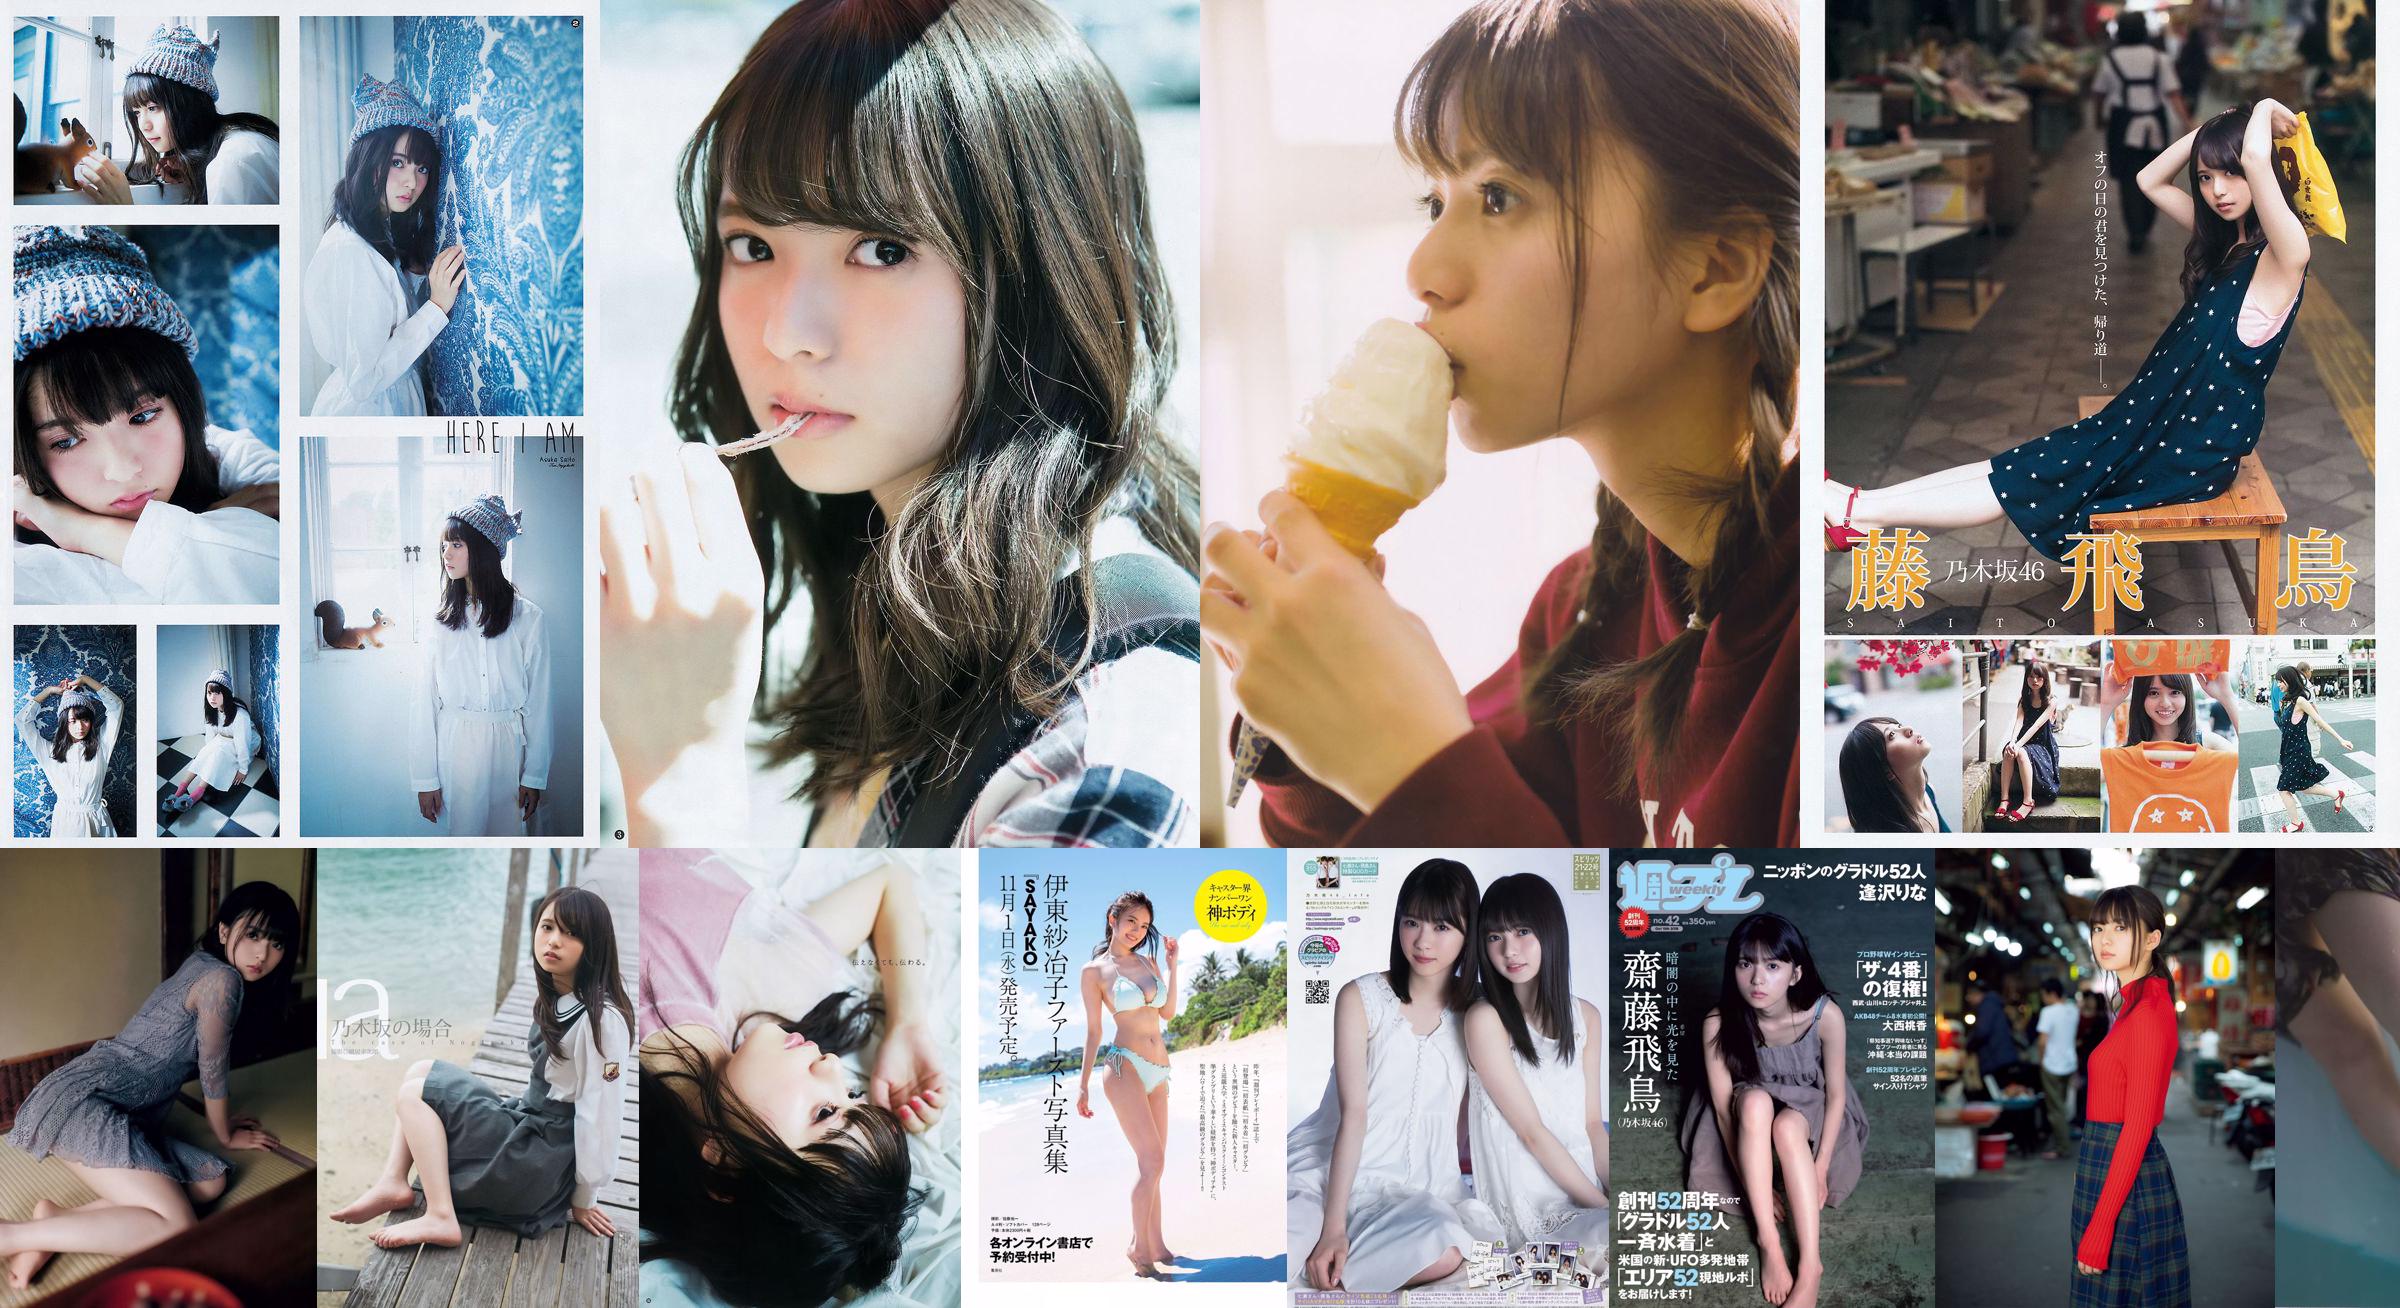 Asuka Saito Rina Aizawa Sumire Sawa Momoka Onishi Saki Ando Haruka [wekelijkse Playboy] 2018 nr 42 foto No.88bdef Pagina 1